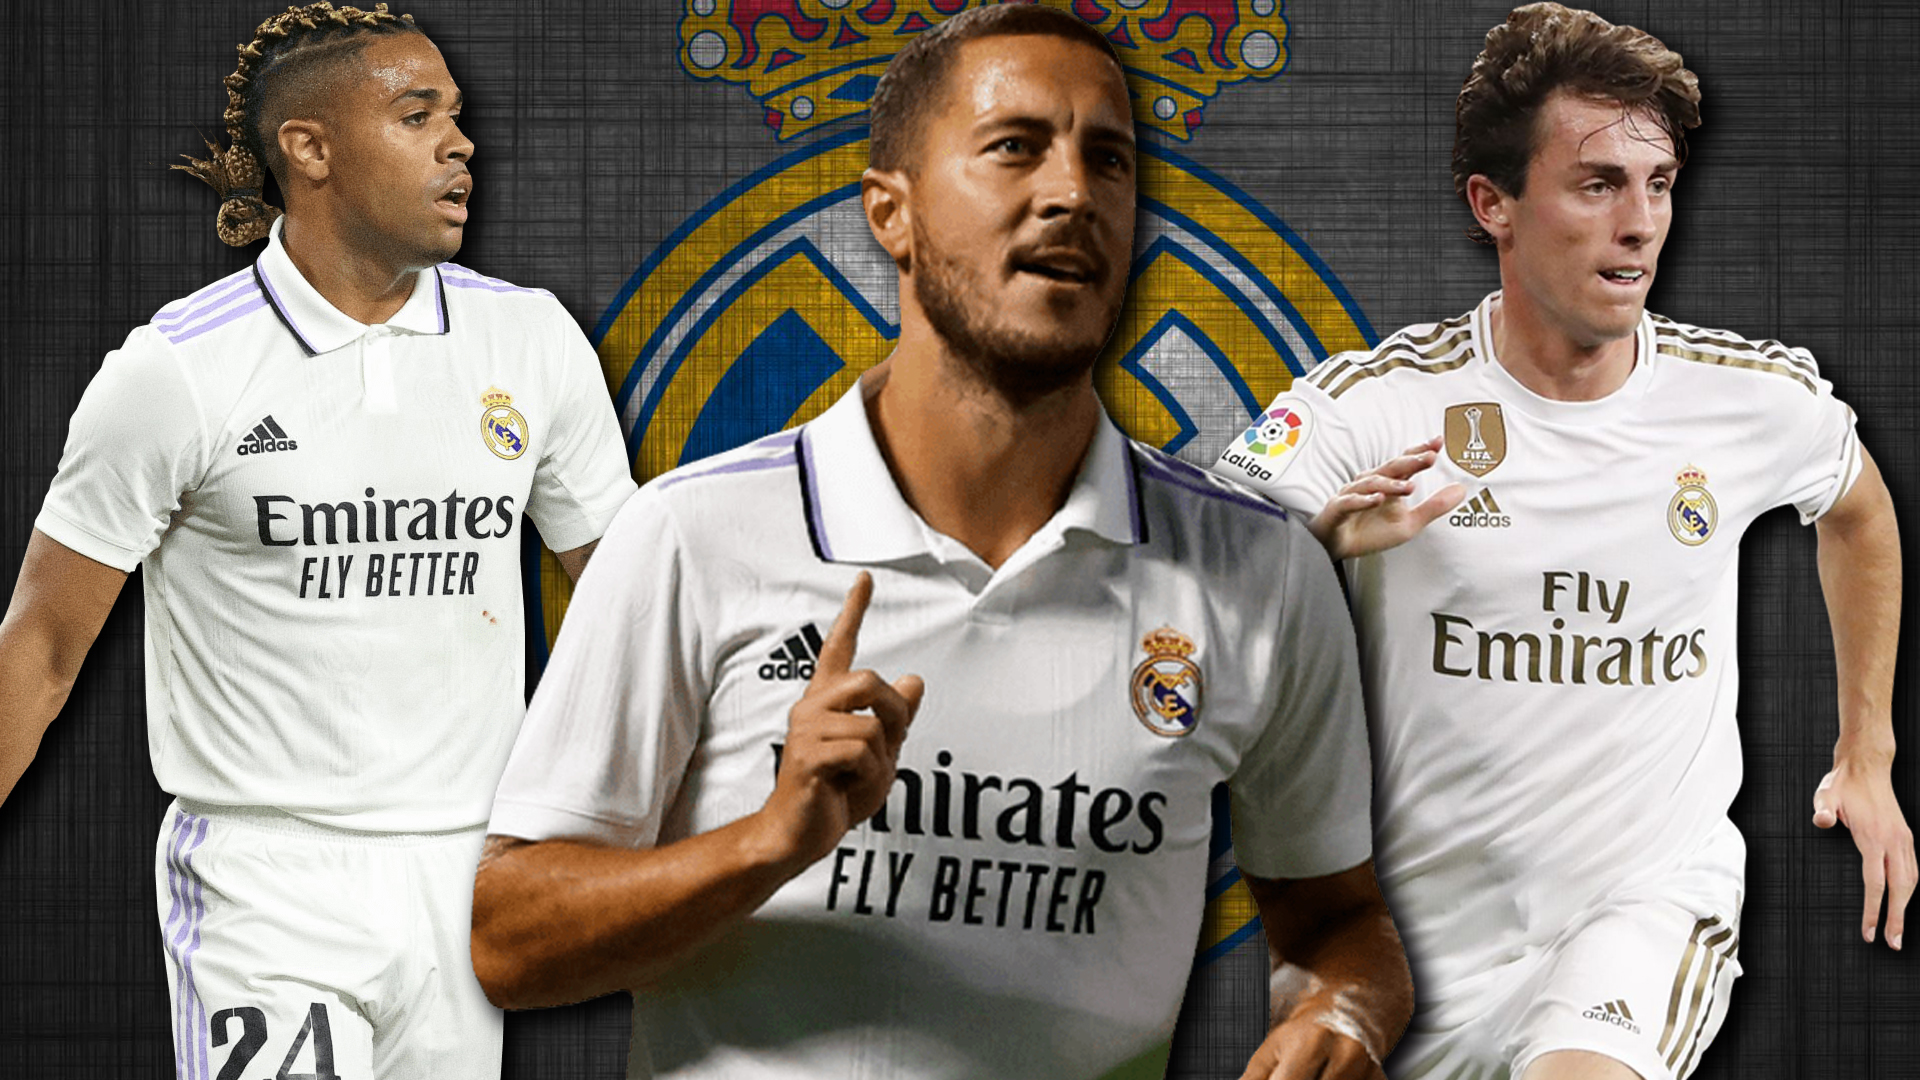 Las 9 cosas importantes que debe resolver Real Madrid en enero